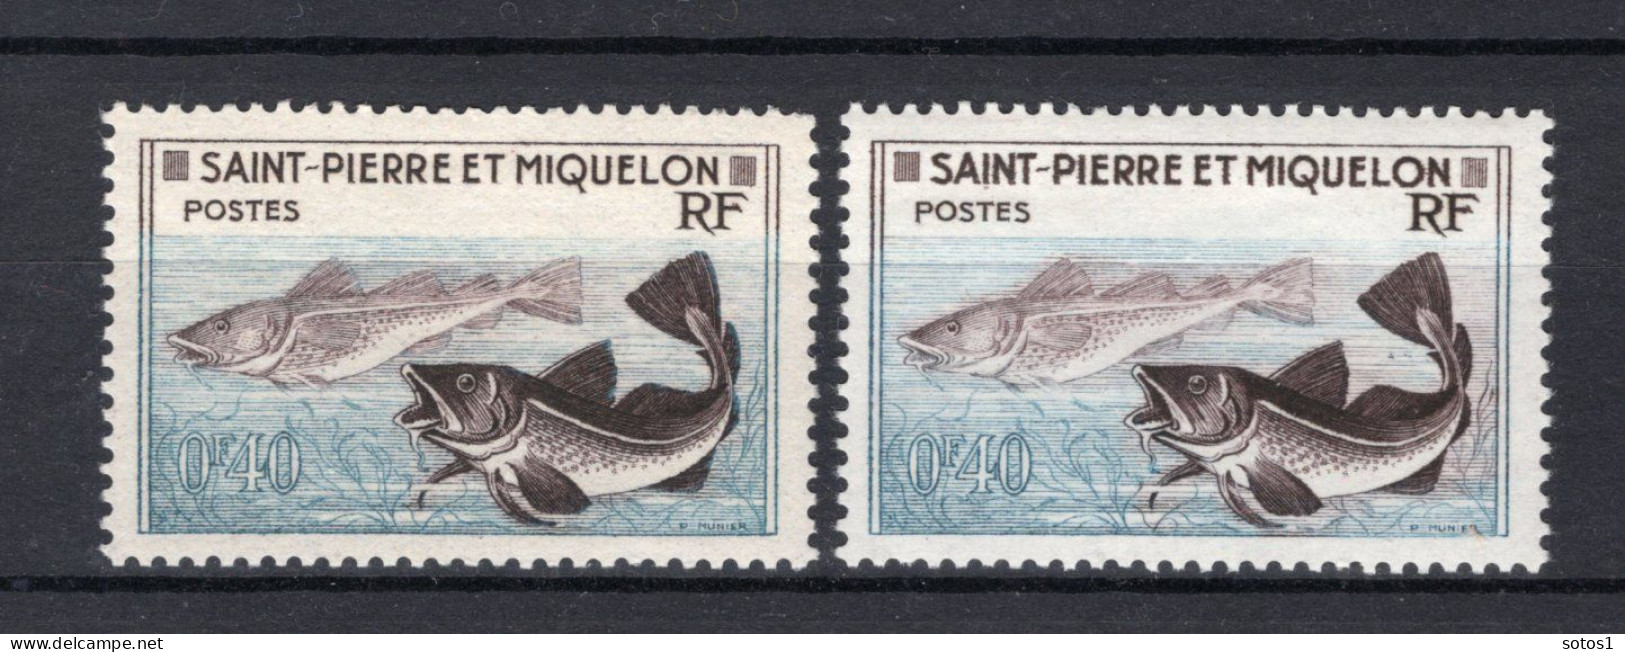 SAINT PIERRE - MIQUELON Yt. 353 MNH 1957 - Ungebraucht